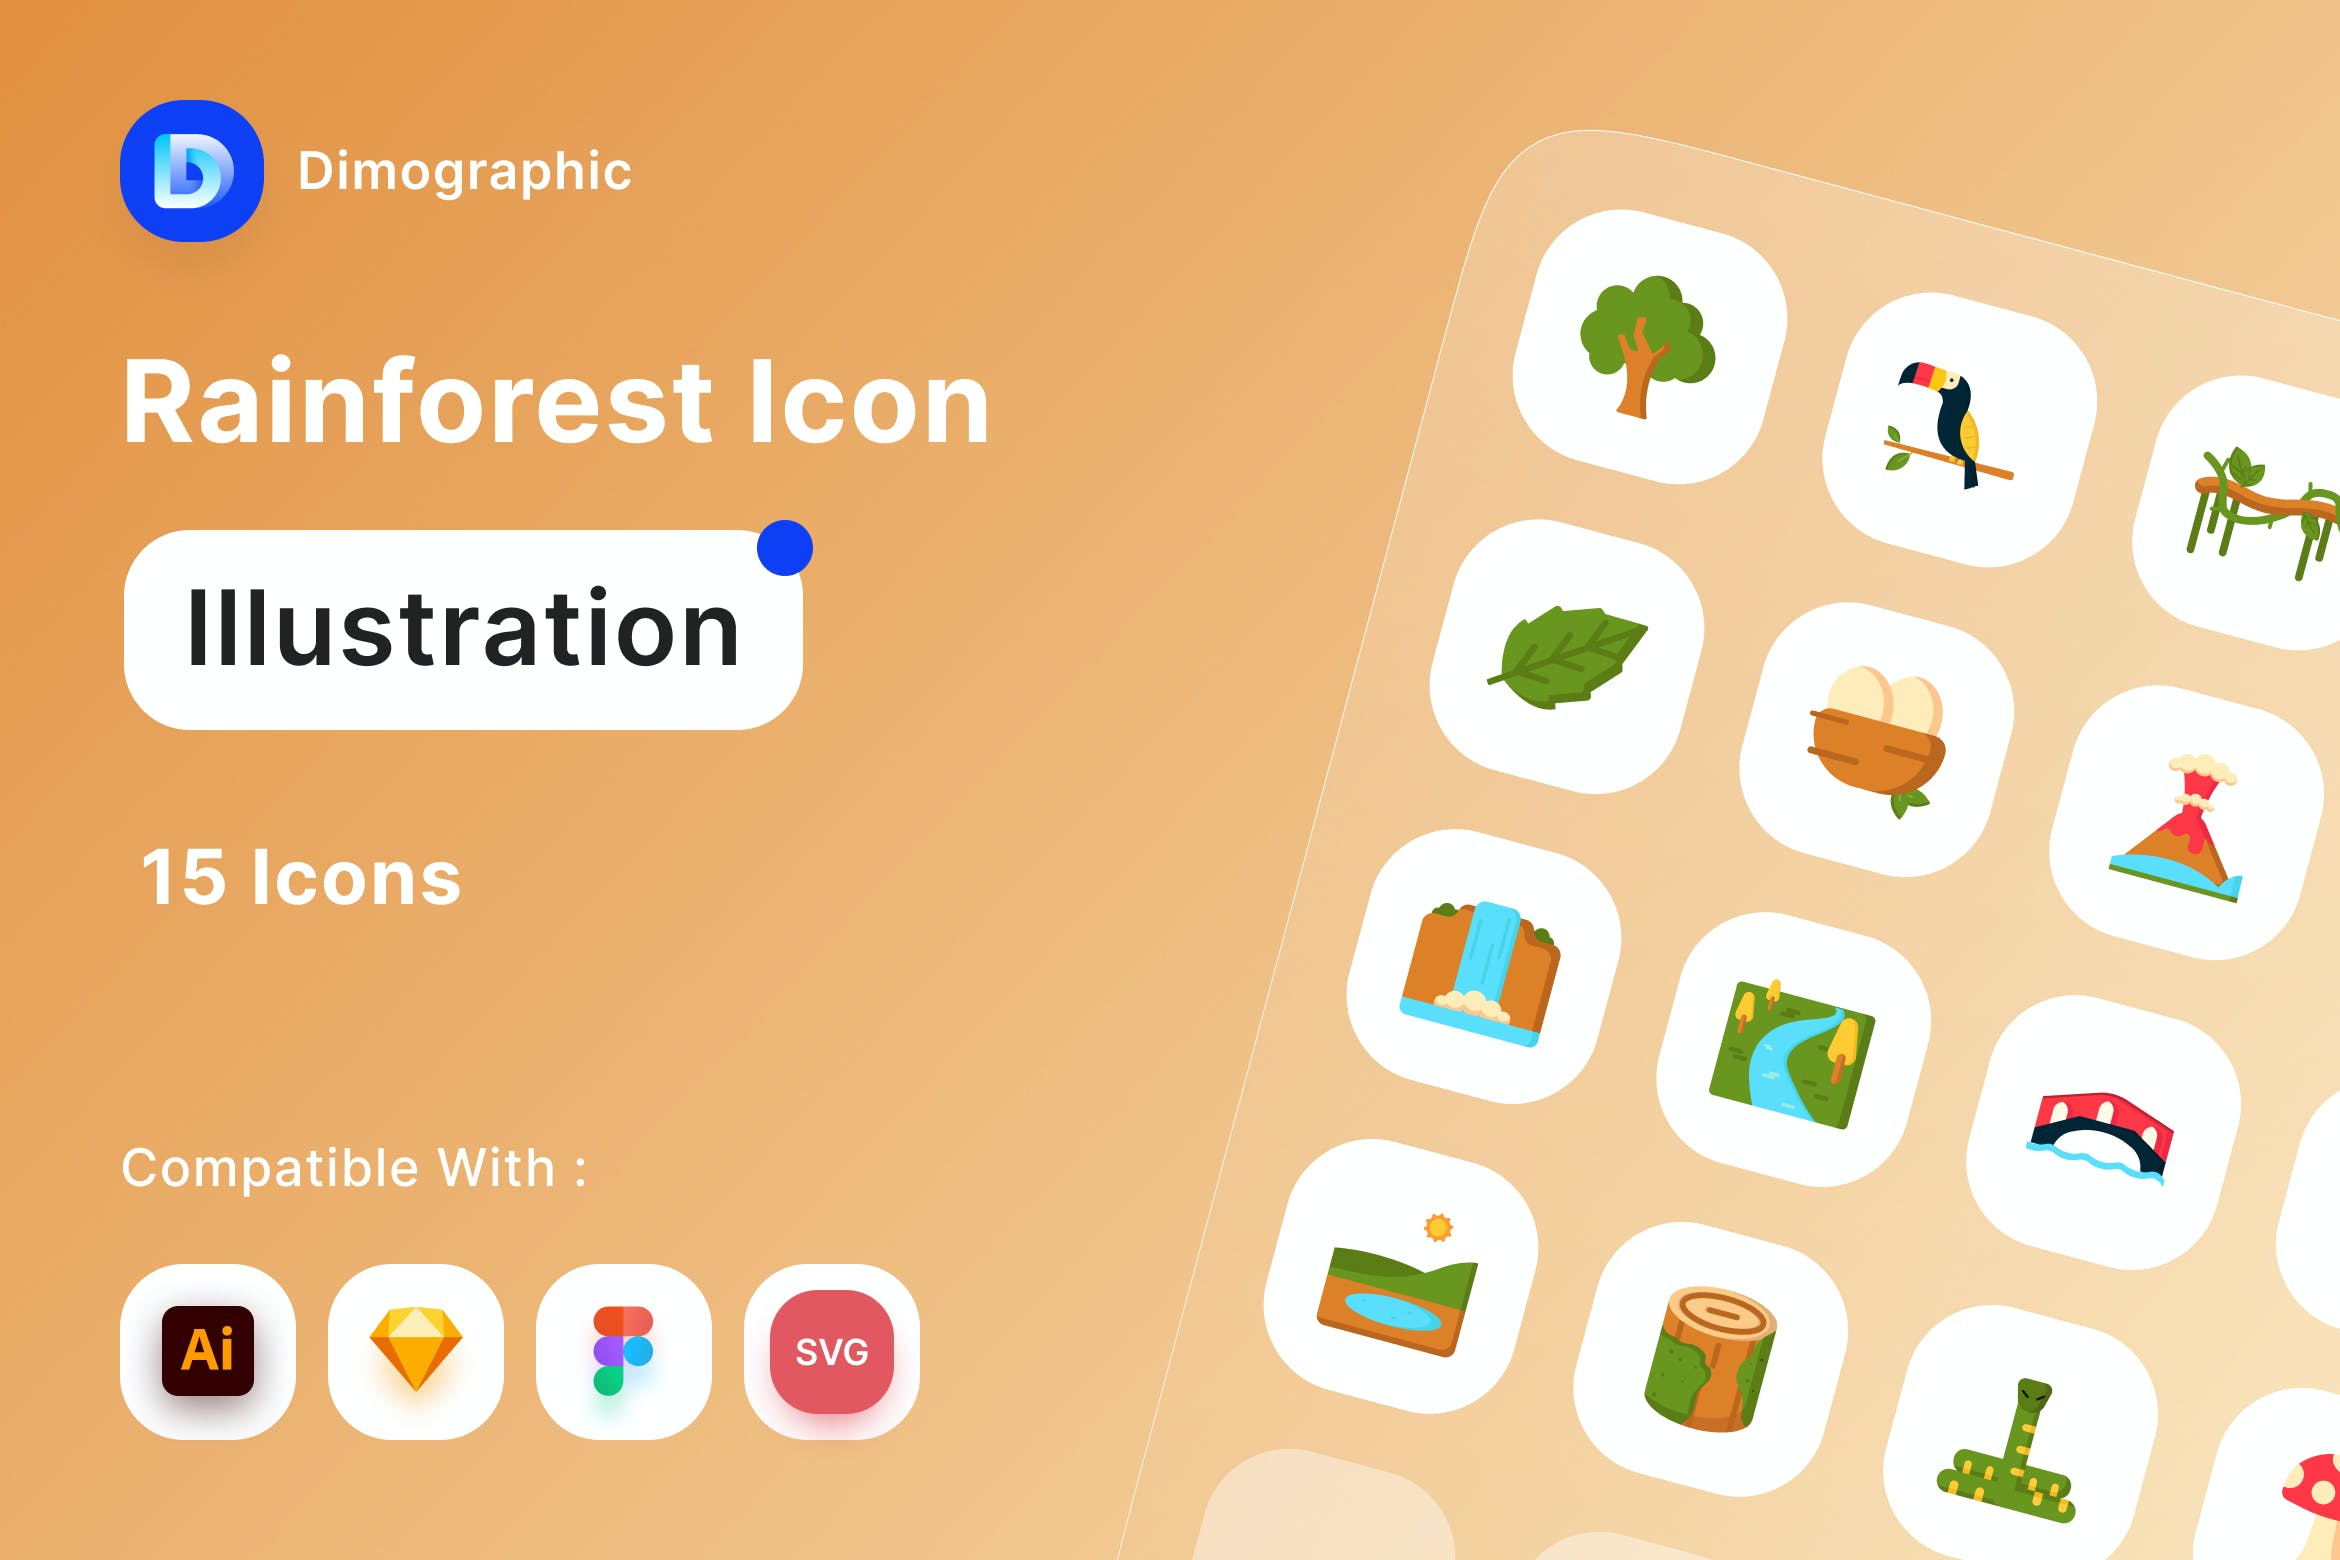 矢量可编辑SVG图标热带雨林图标素材包免费下载